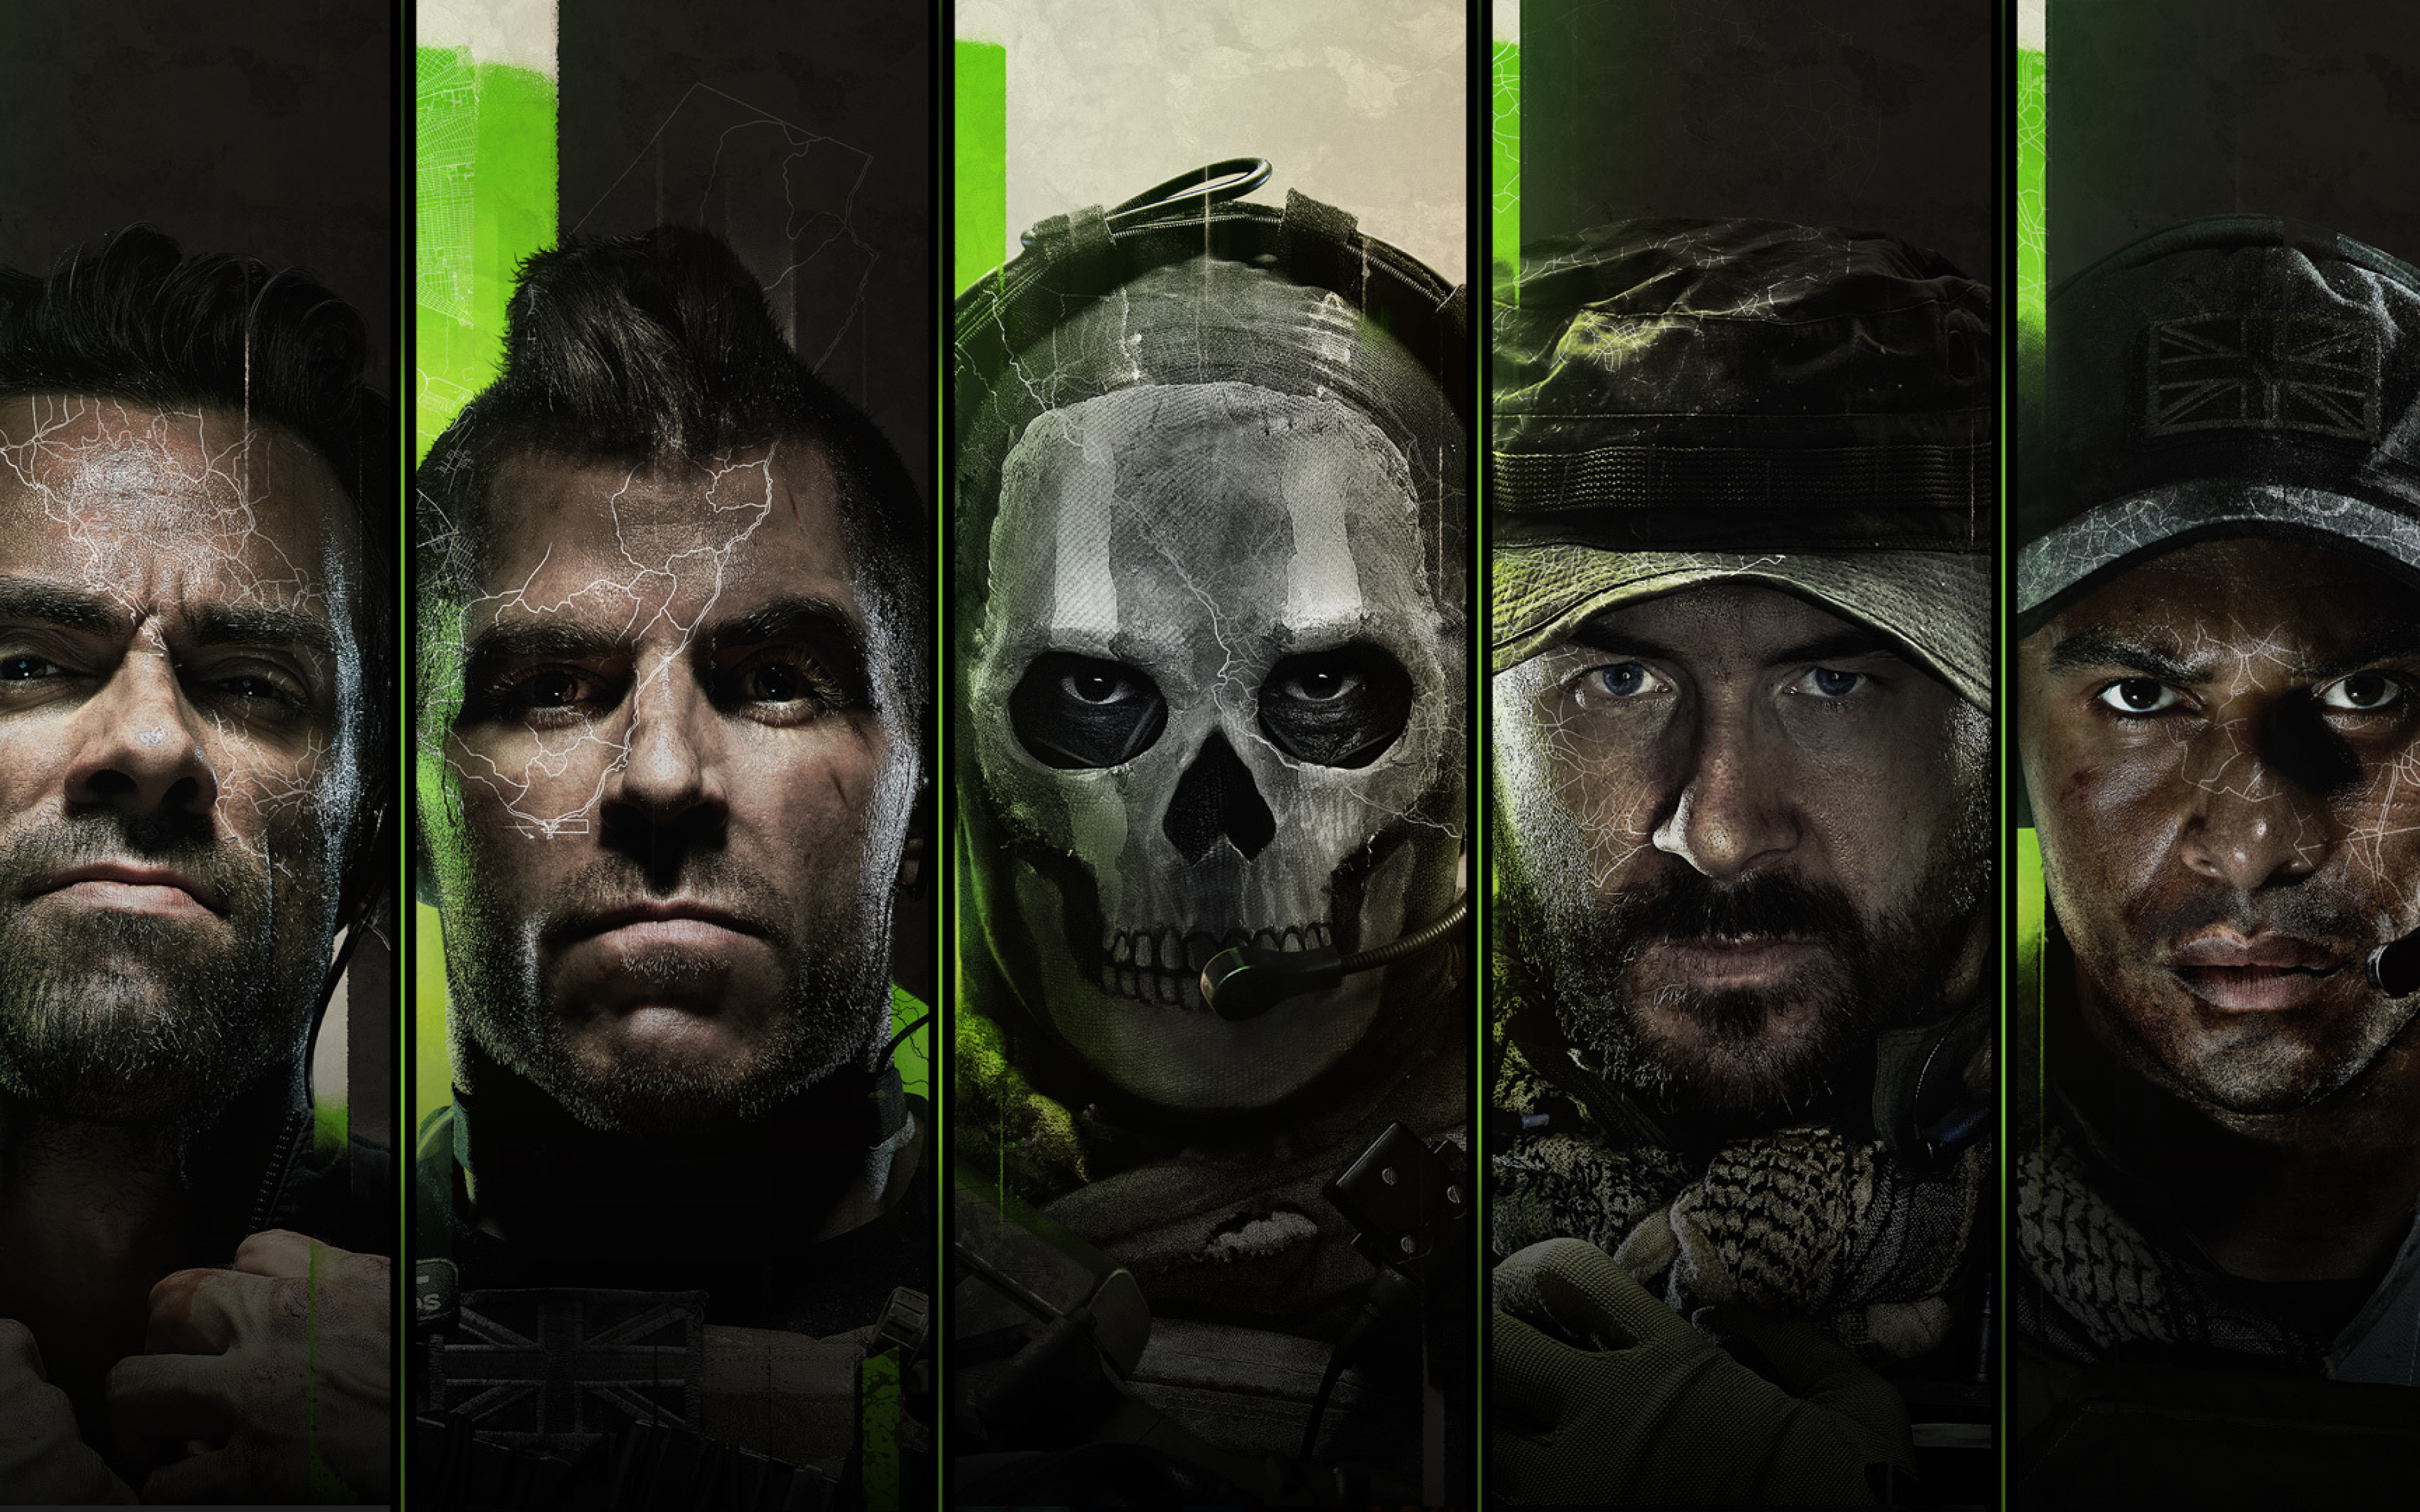 18+ Call of Duty: Modern Warfare 2 - 3 СЕРИЯ ЧУМОВОГО ШУТЕРА от первого лица, приятного просмотра!!!